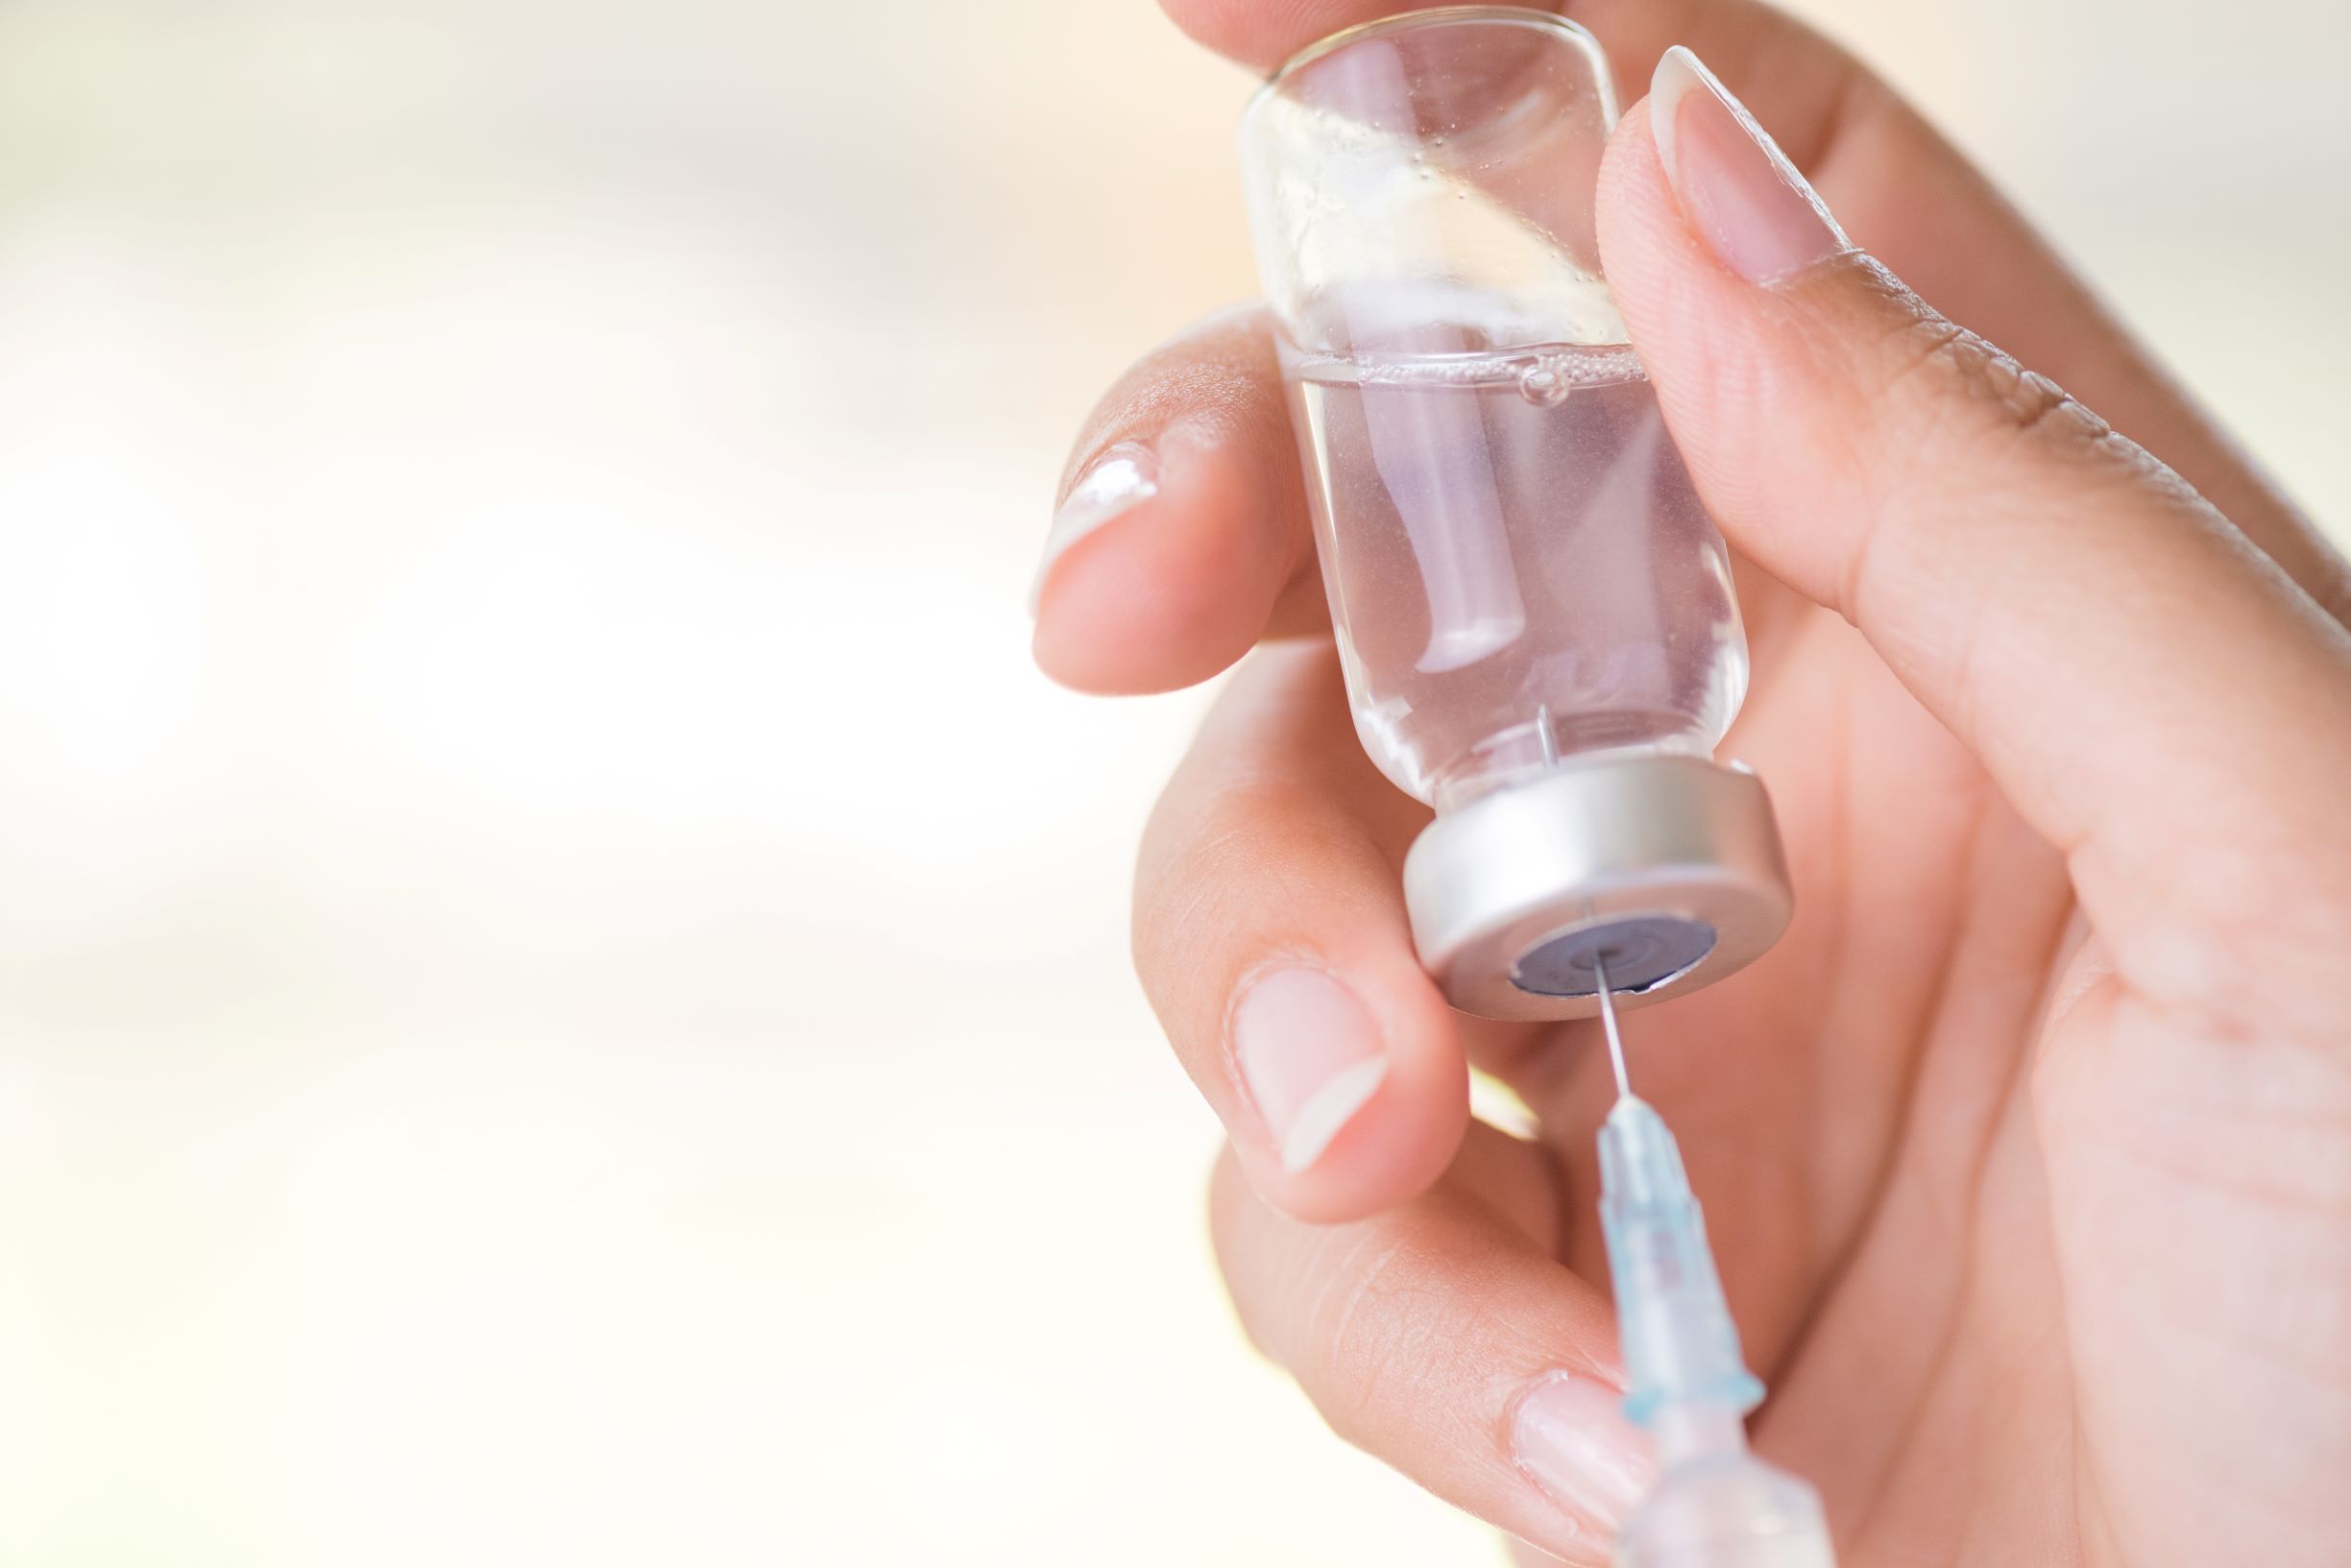 Fundação Municipal de Saúde informa como irá proceder a vacinação dos médicos em Teresina